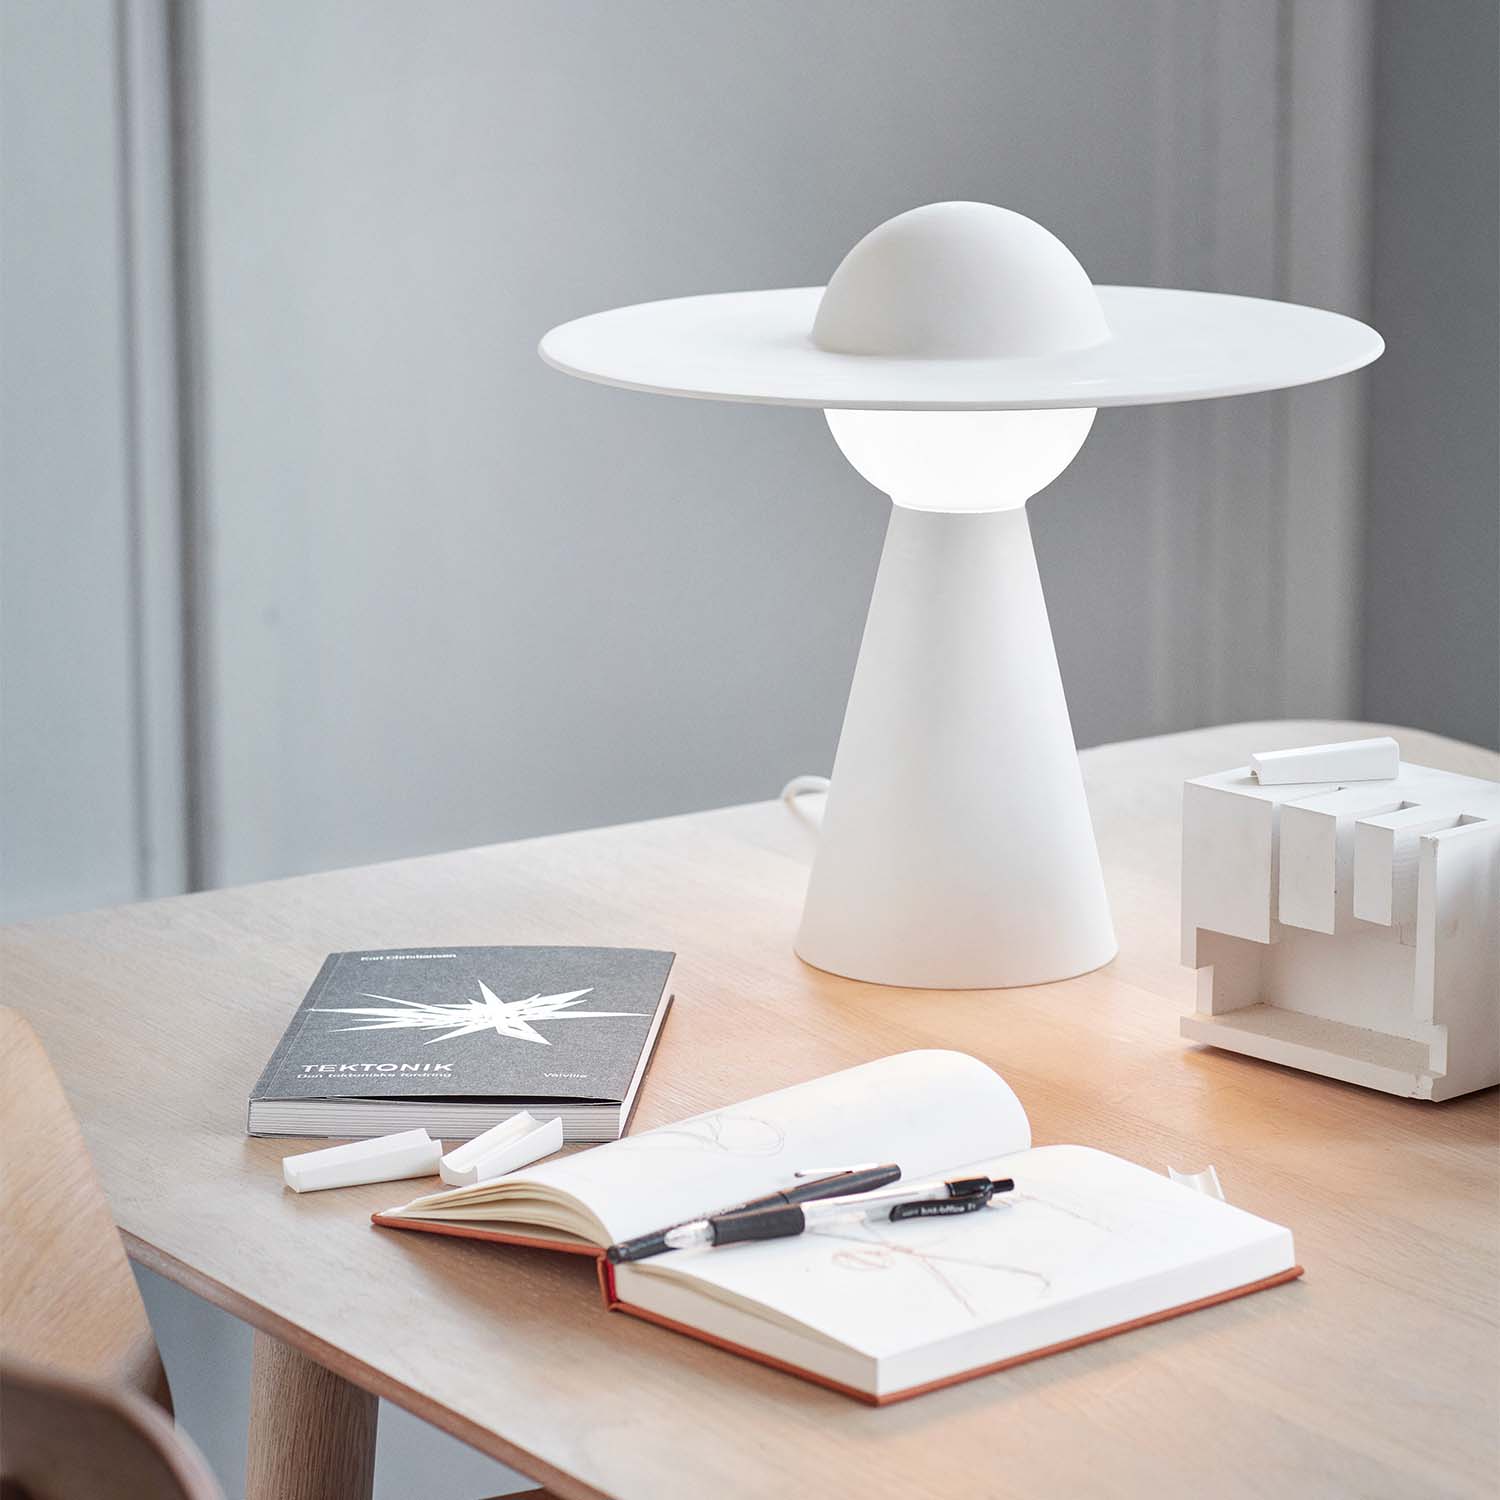 KERAMIK – Weiße Designer-Tischlampe mit verstellbarer Kappe